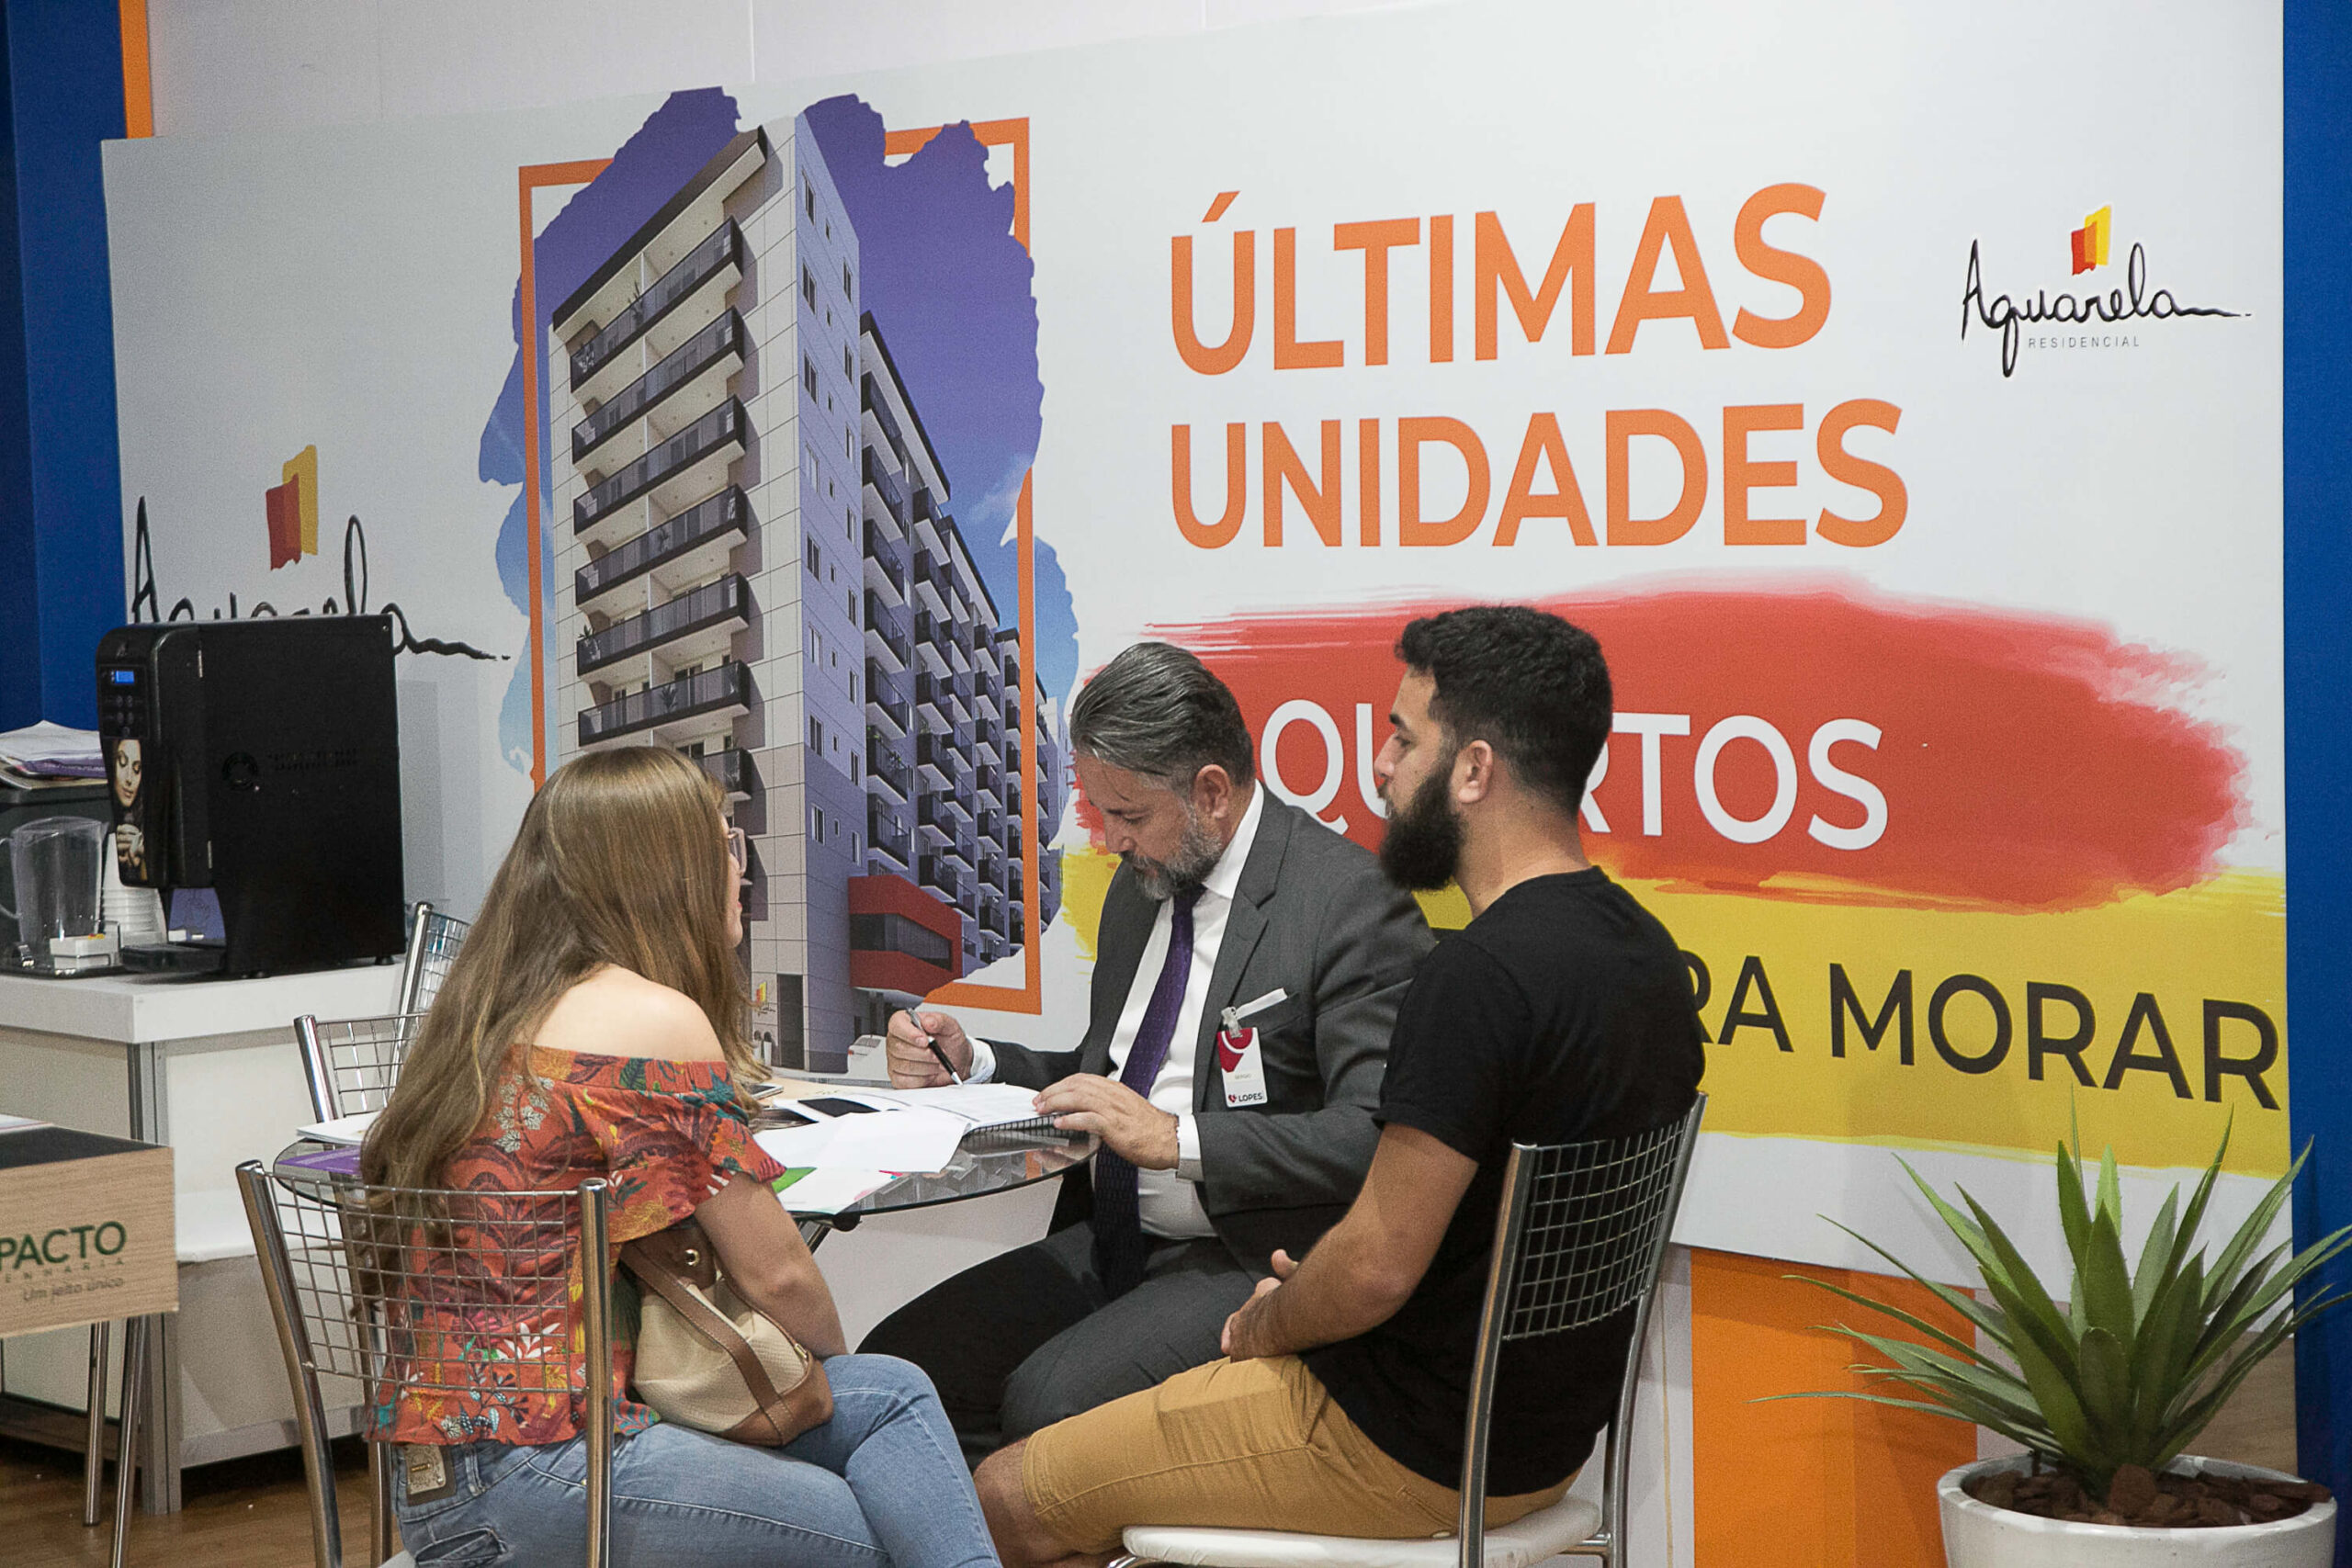 Como foi 2020 para os imóveis residenciais no Brasil?